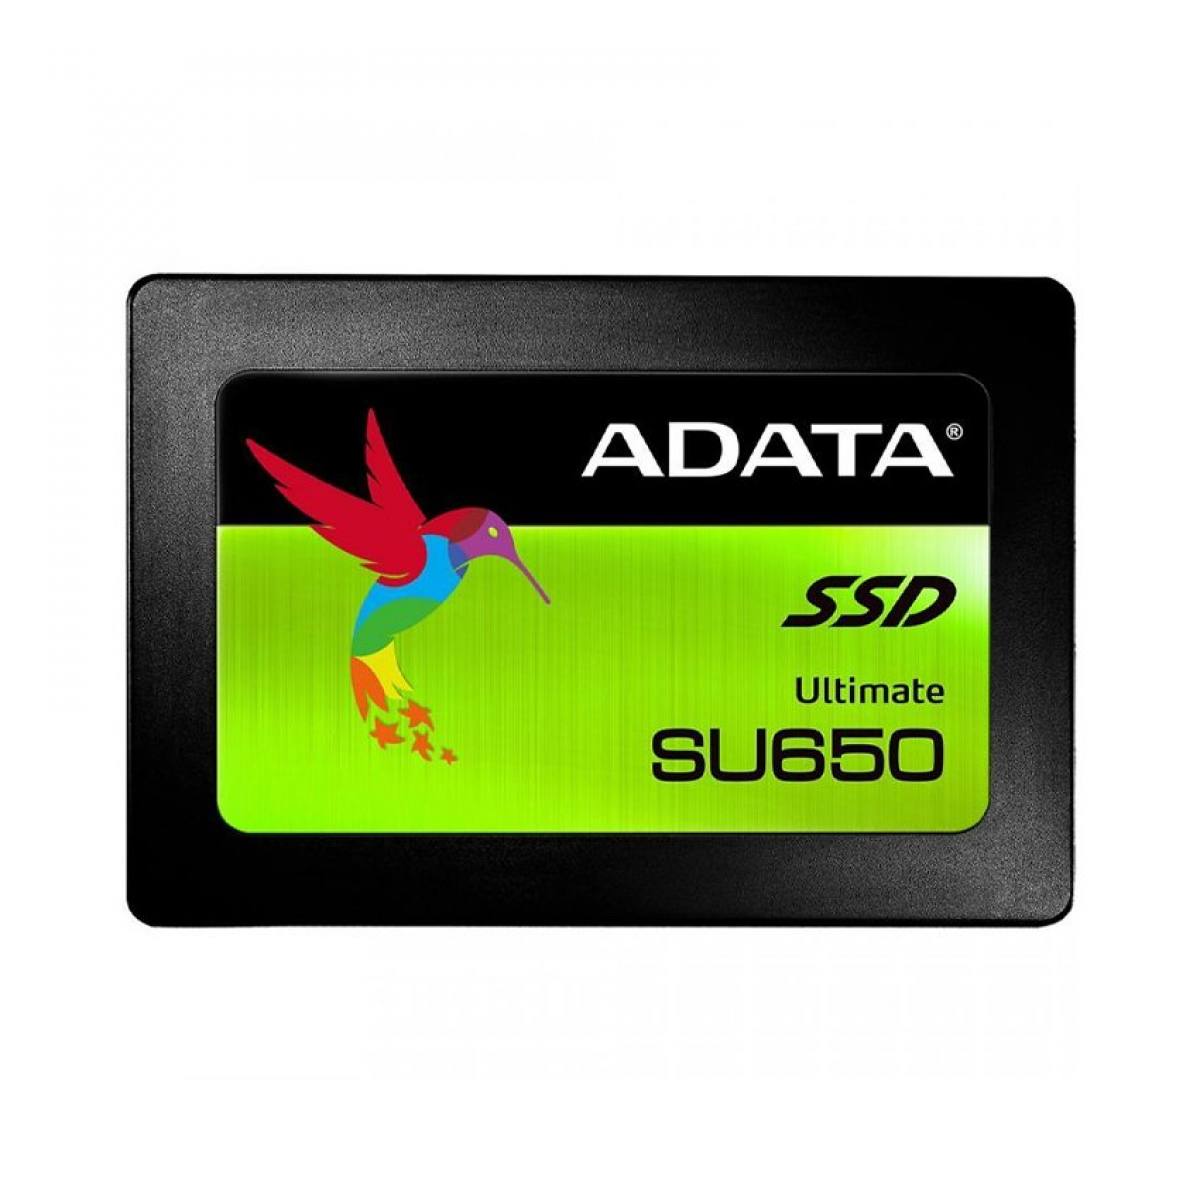 SSD ADATA SU650 960GB SATA